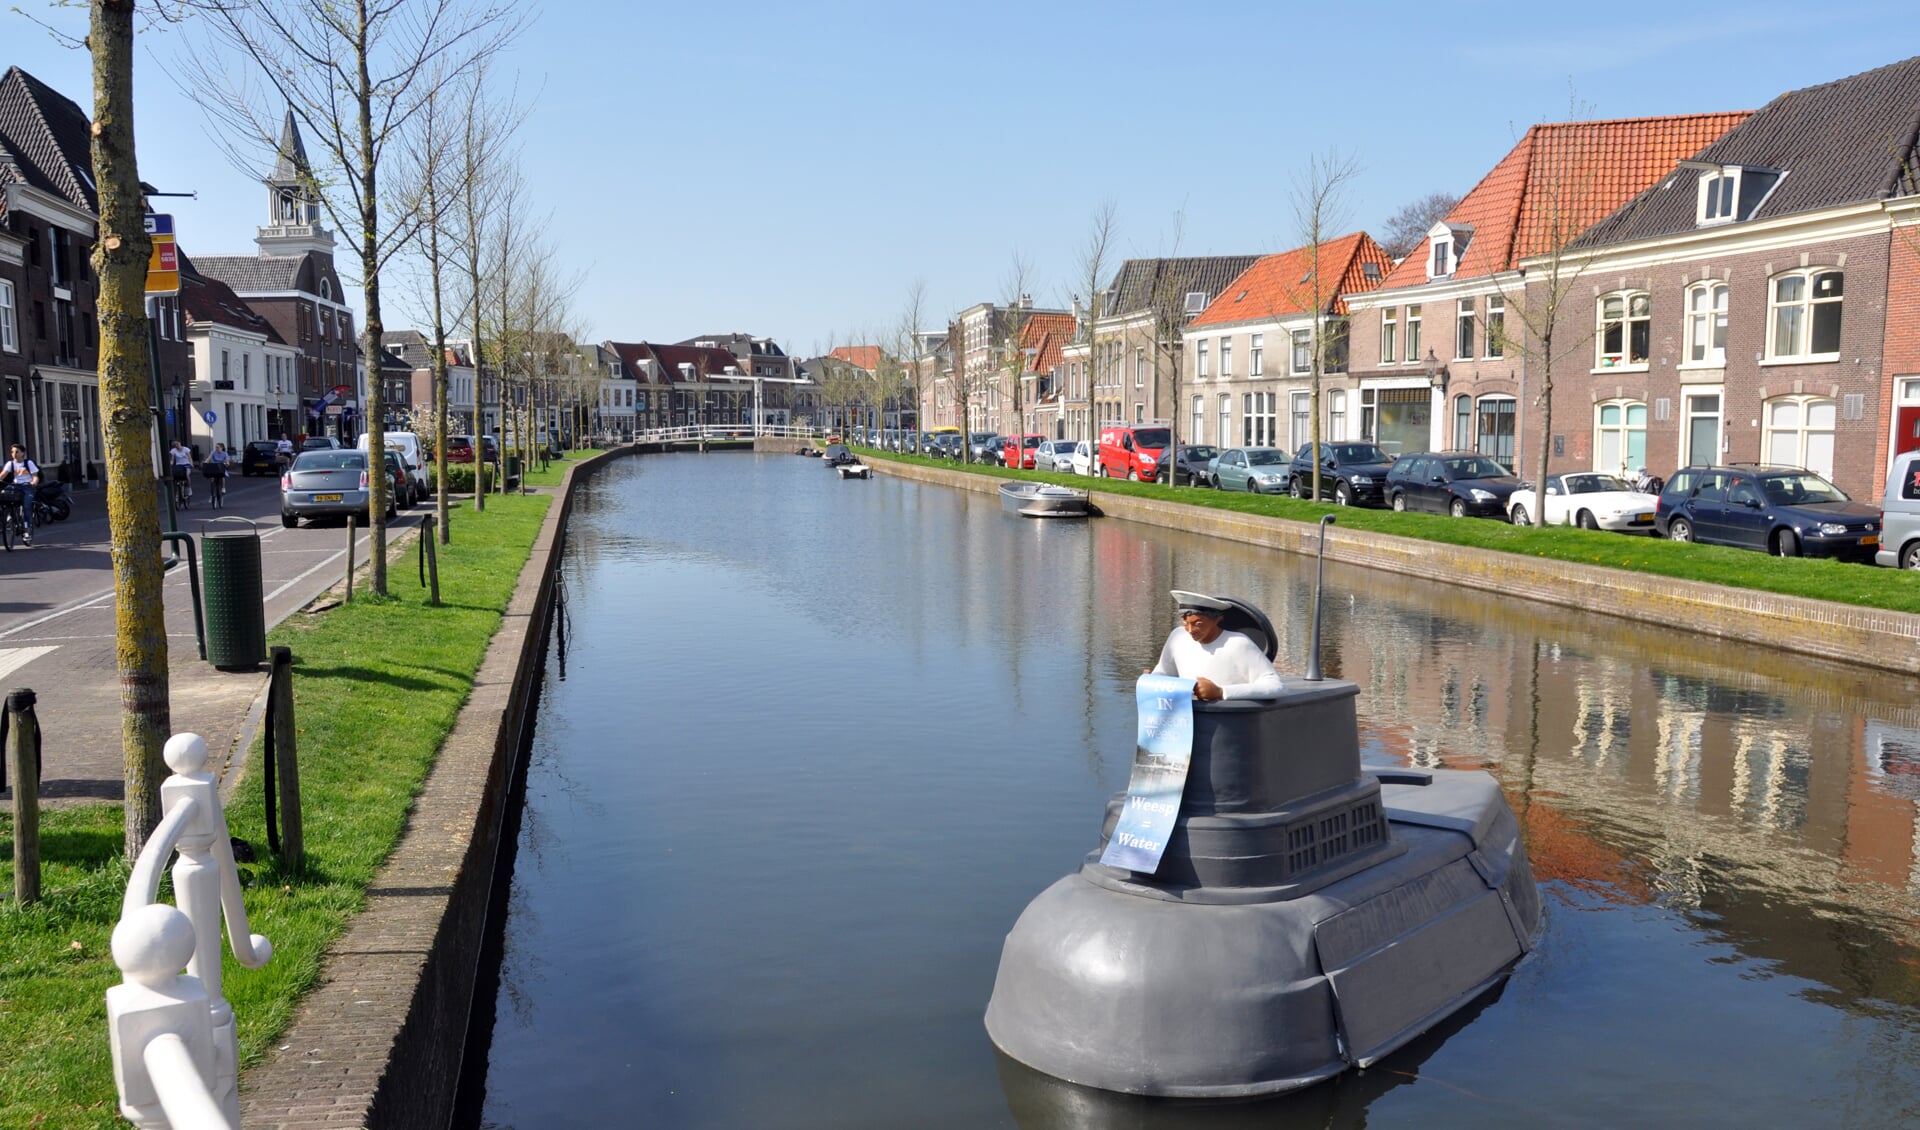 De duikboot is tijdelijke reclame voor de expositie in het Museum Weesp over onze stad aan het water. Op de achtergrond de bootjes aan de kade waar nu discussie over is.